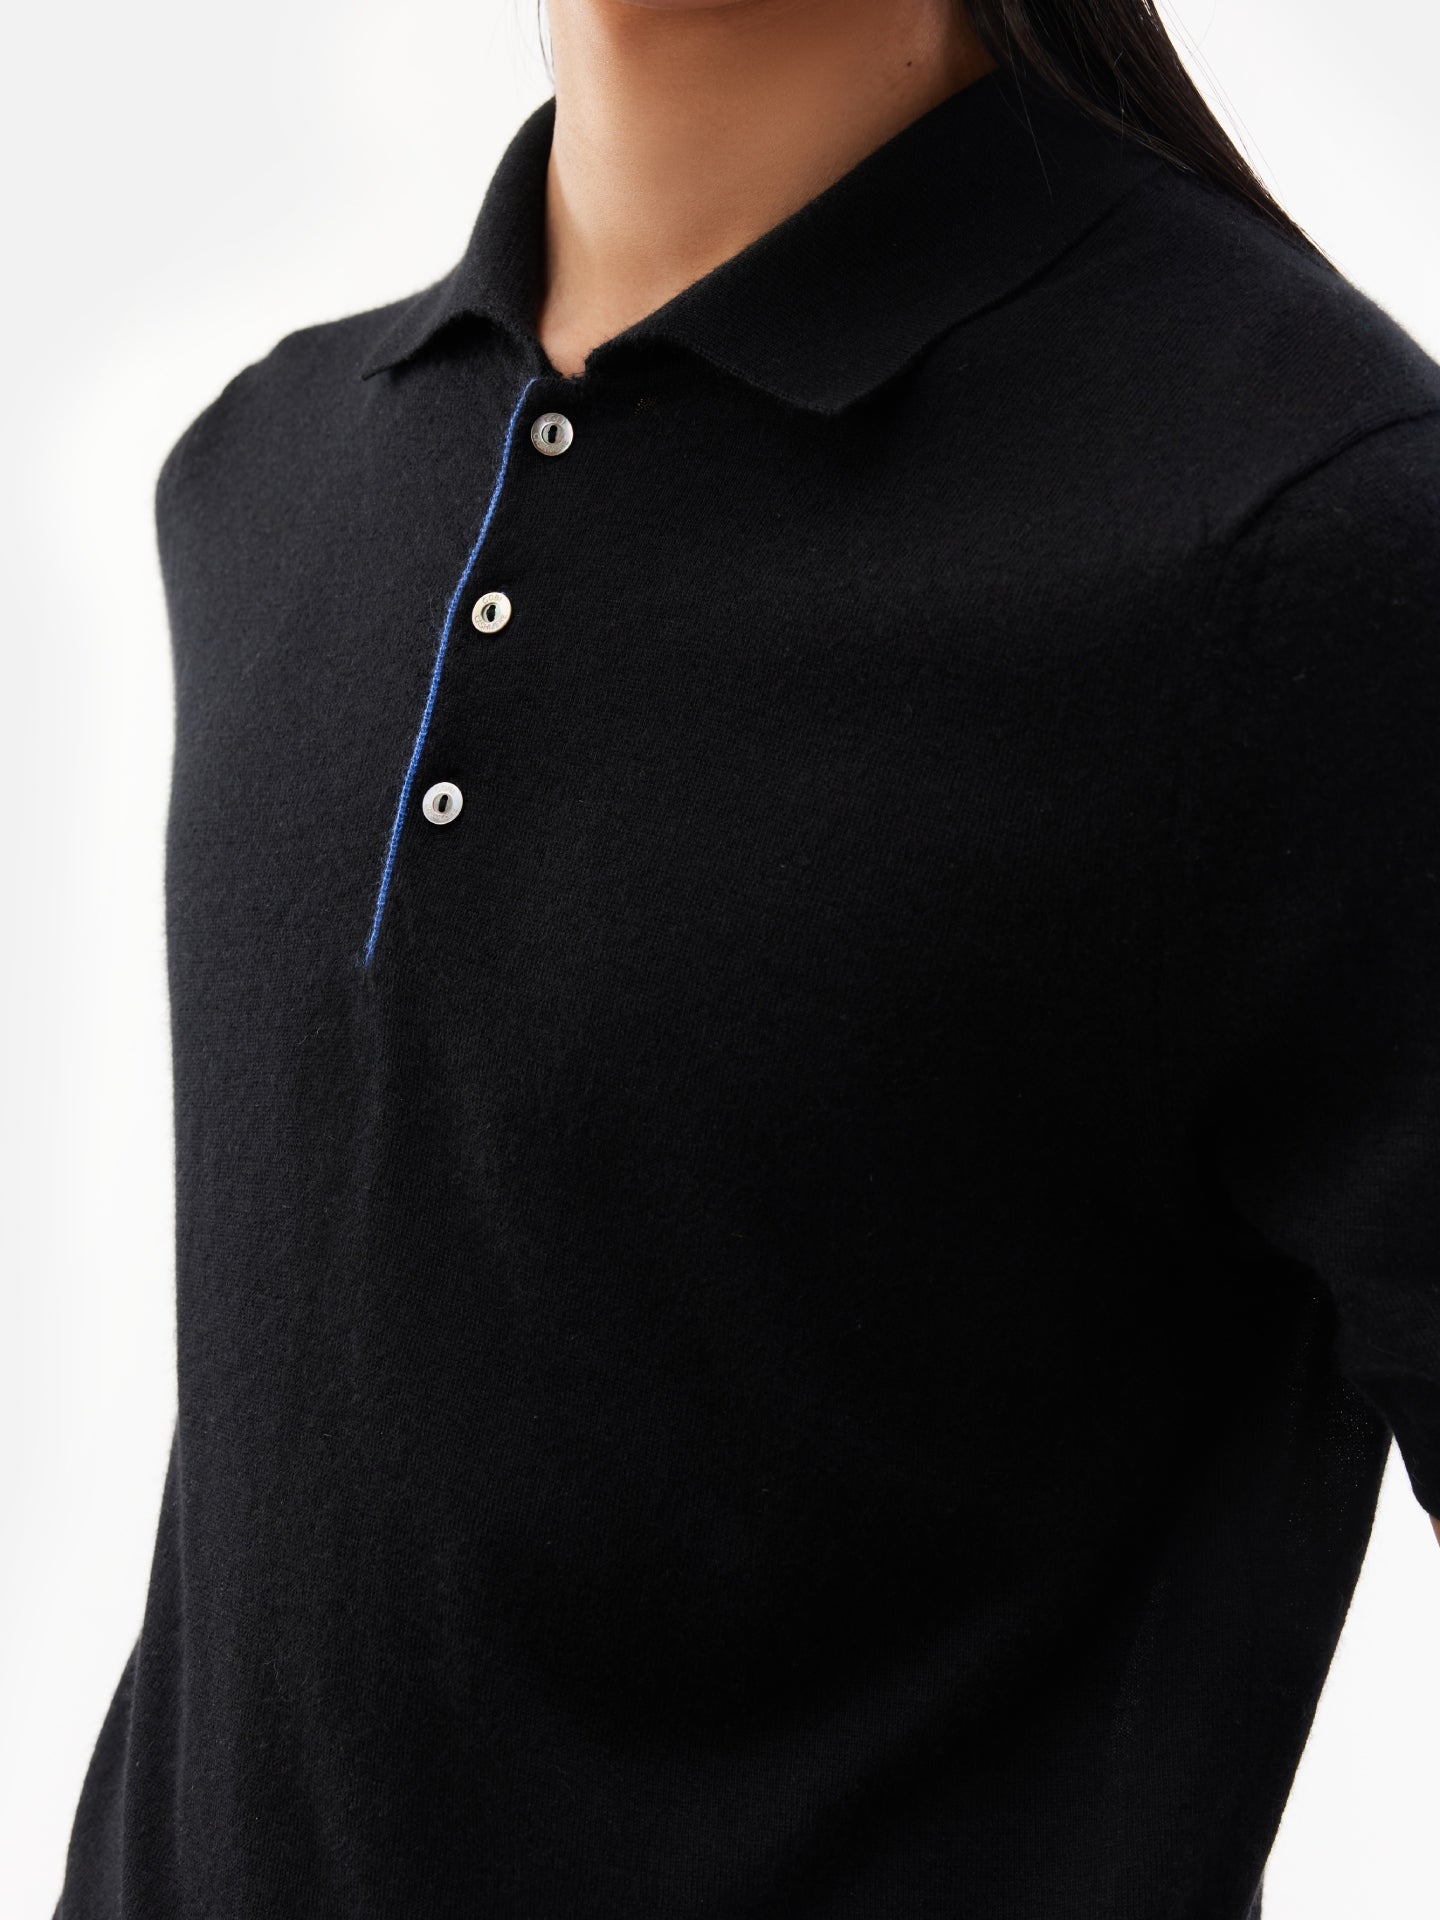 Men's Cashmere Polo Shirt Black - Gobi Cashmere